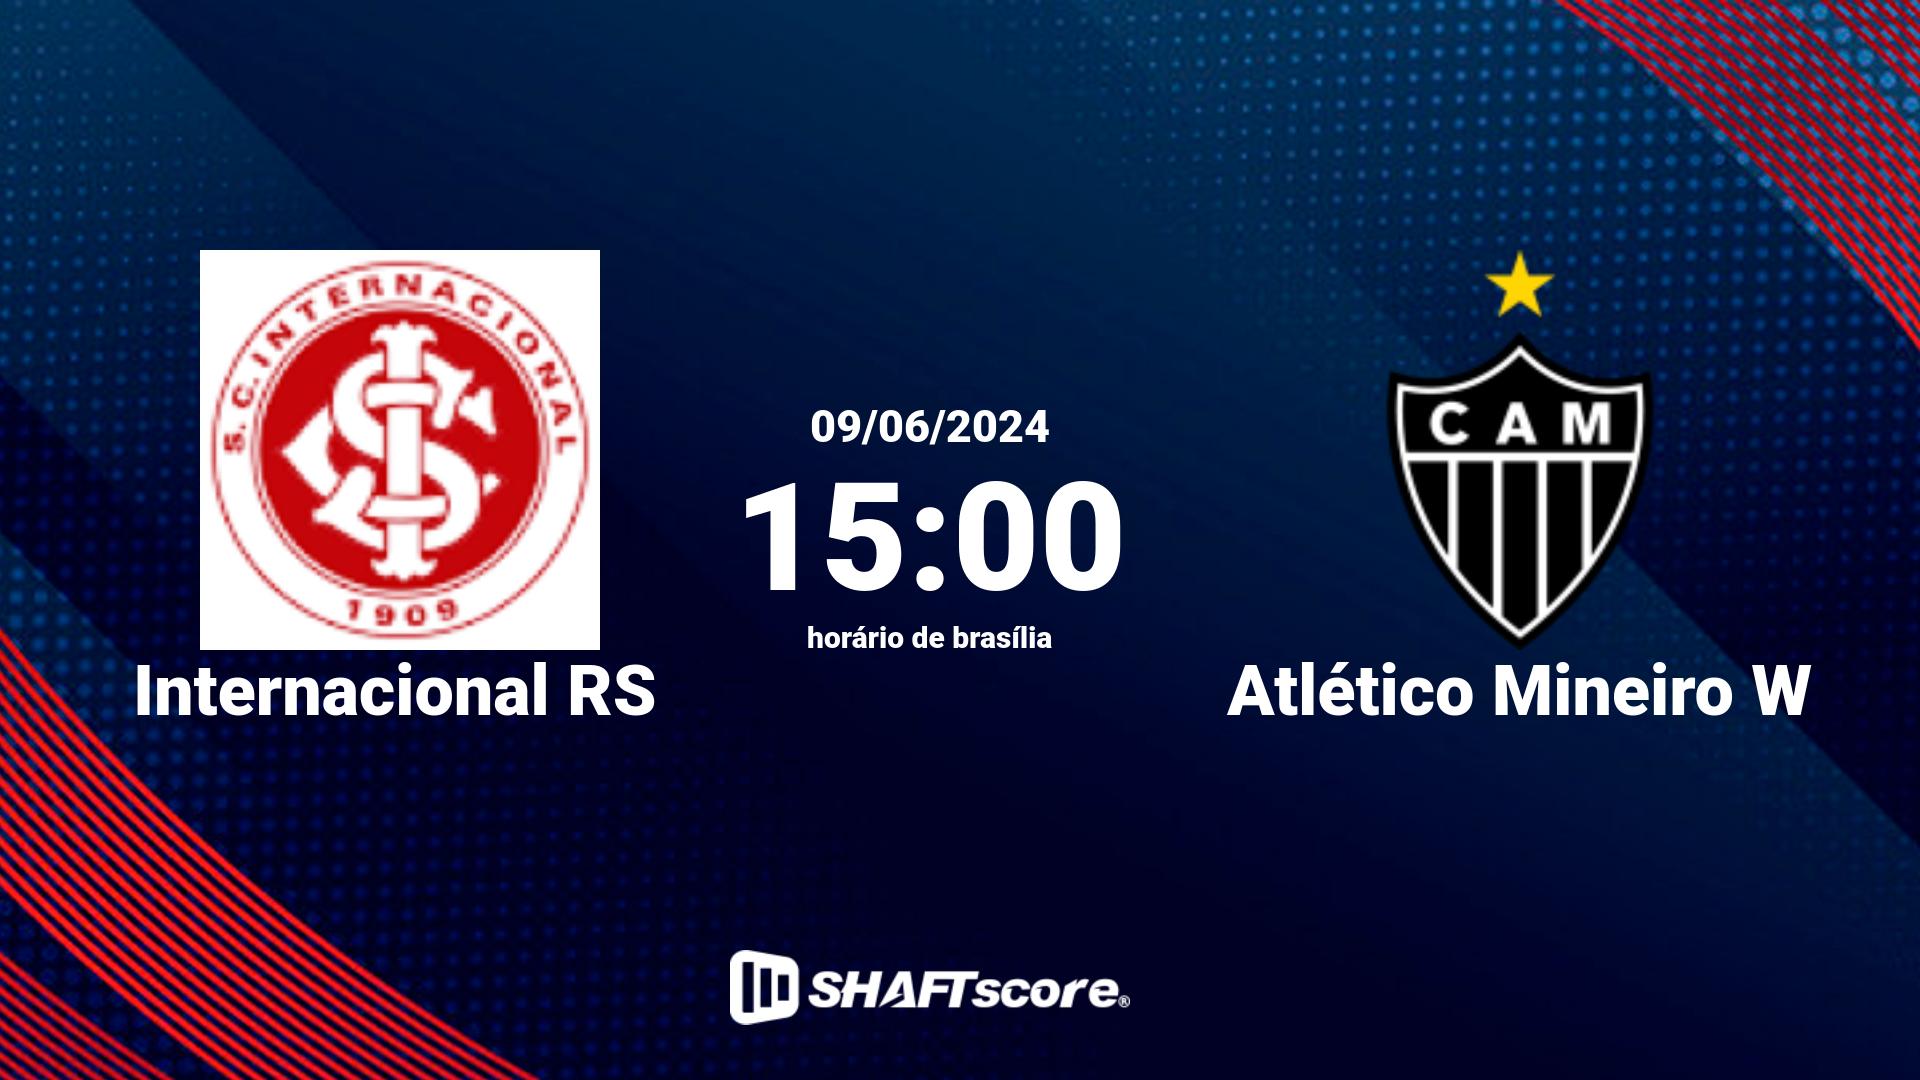 Estatísticas do jogo Internacional RS vs Atlético Mineiro W 09.06 17:00